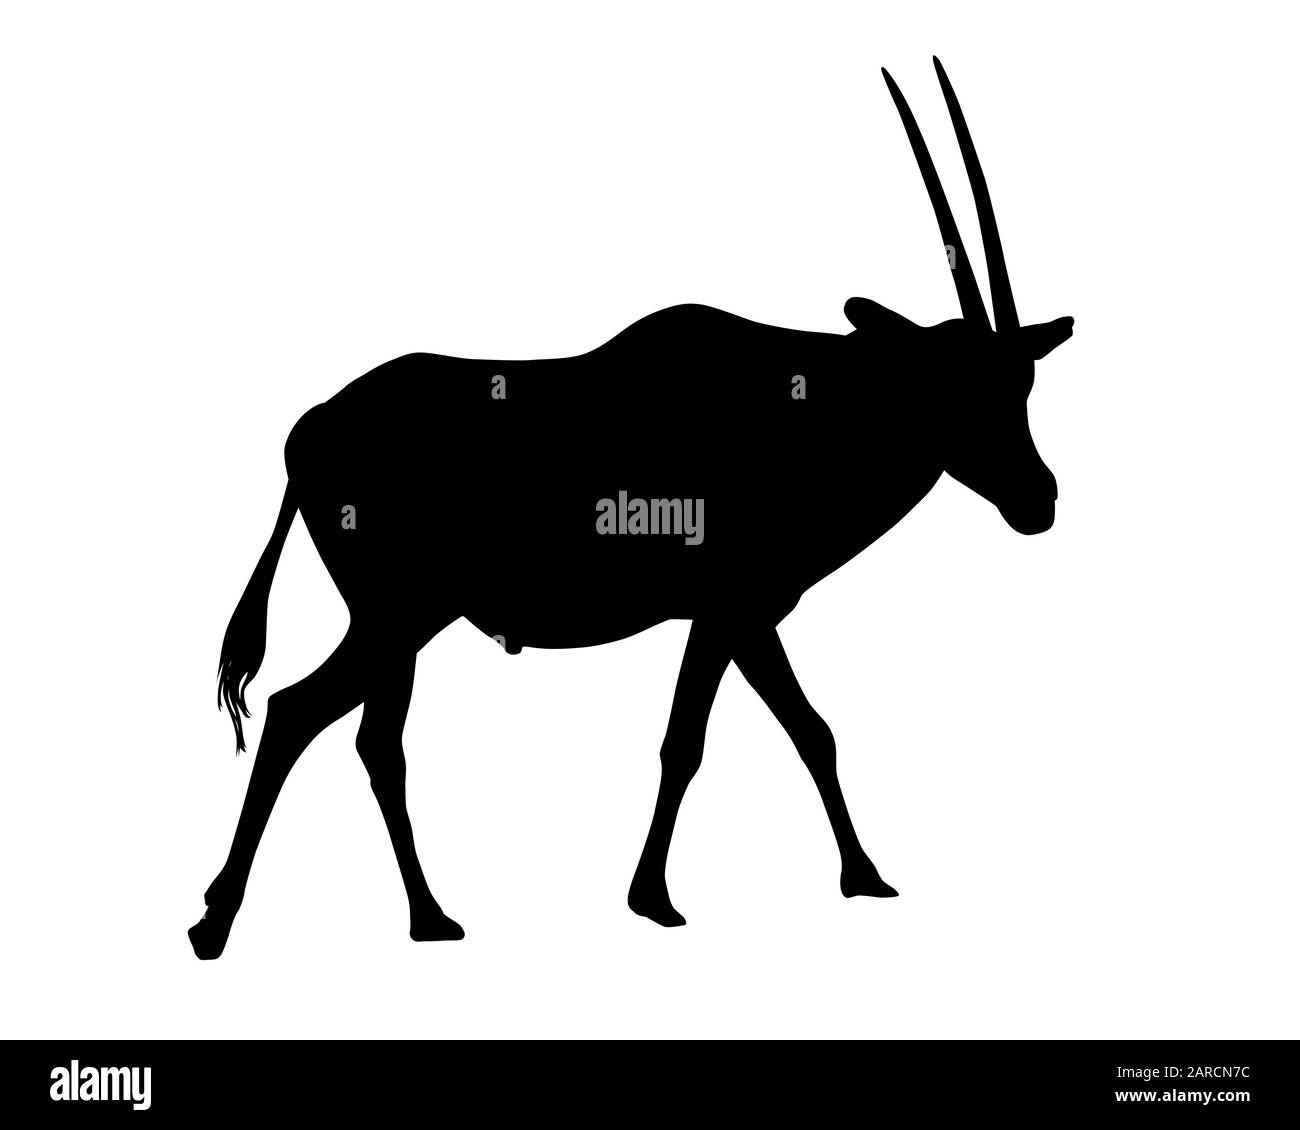 Realistische Darstellung von Silhouetten von Gazelle oder Antilope. Horned Oryx stehend - Vektor Stock Vektor